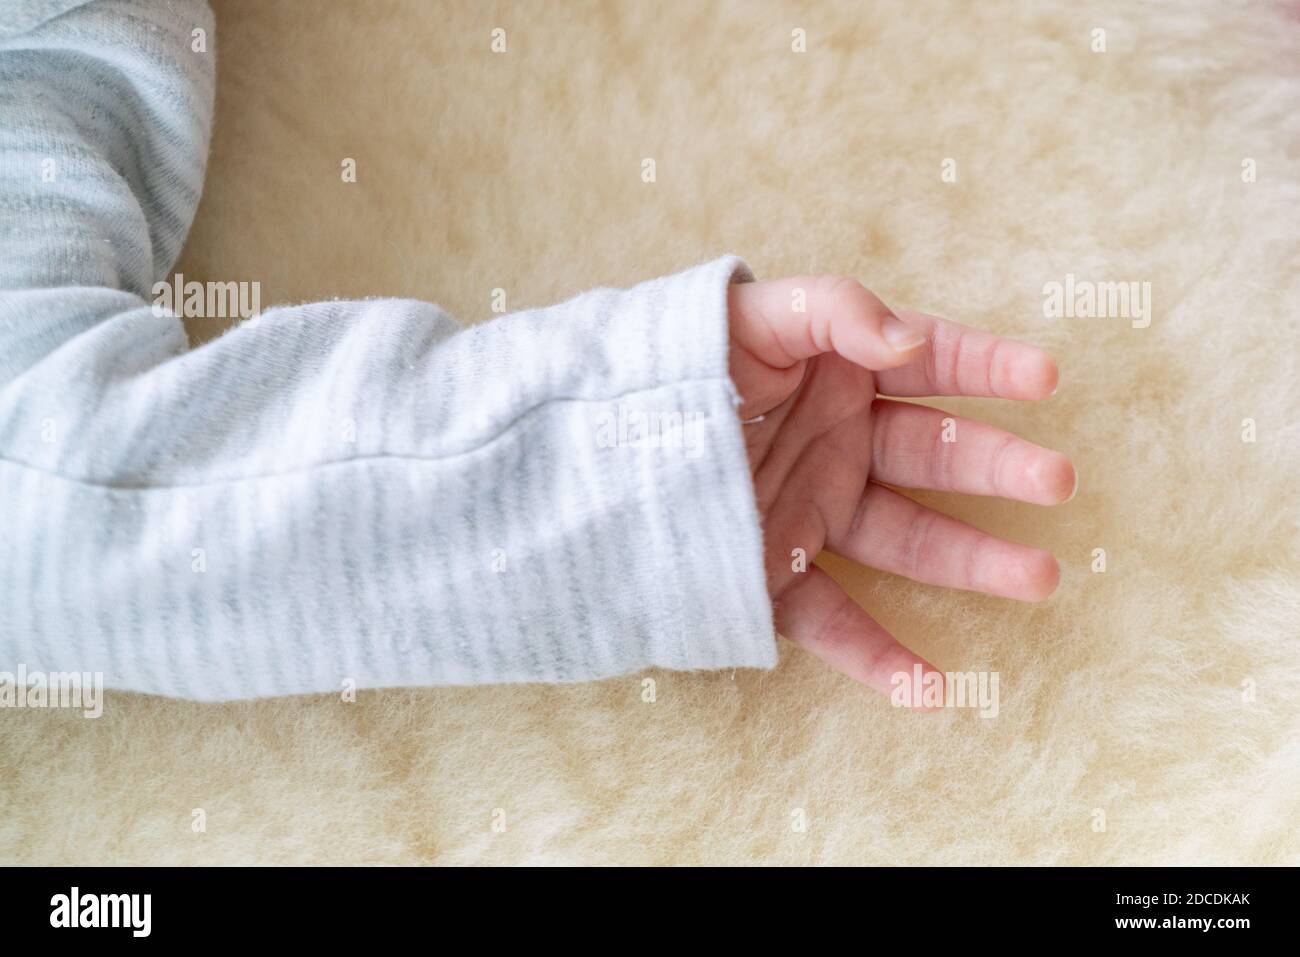 pequeña, linda mano de una pequeña niña o niño recién nacido caucásico que lleva una camisa blanca sobre un suave y acogedor fondo de piel de cordero Foto de stock